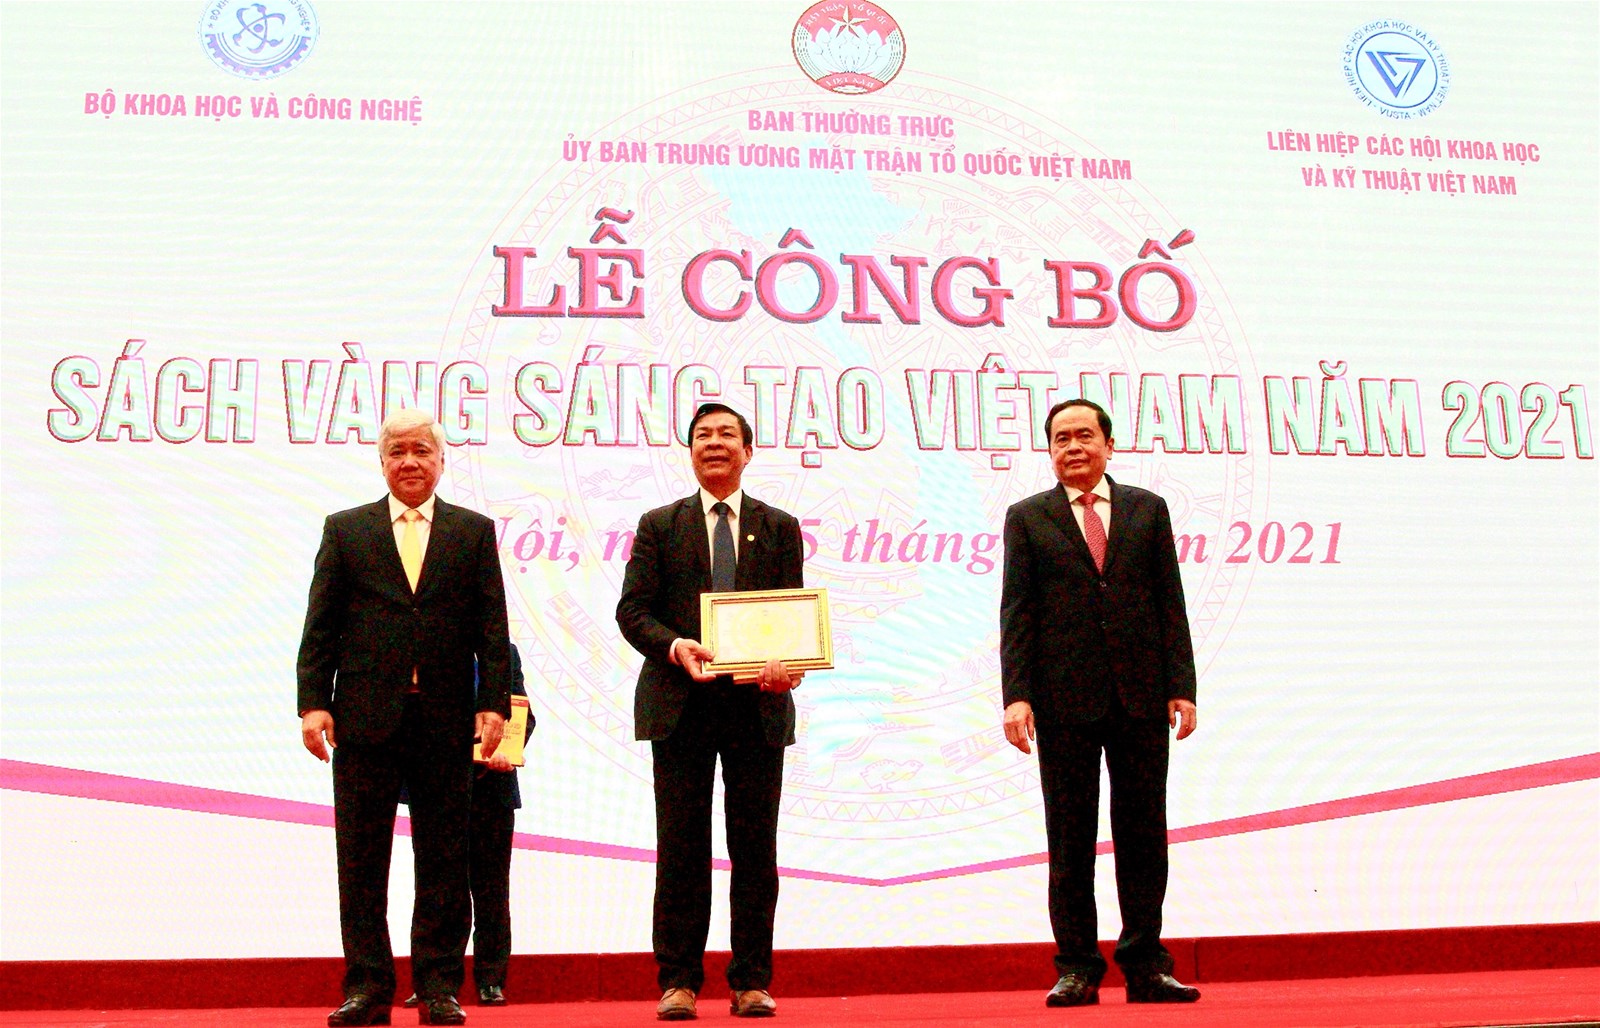 Gốm Đất Việt - đơn vị duy nhất được vinh  danh 03 công trình tiêu biểu trong sách vàng sáng tạo Việt Nam 2021